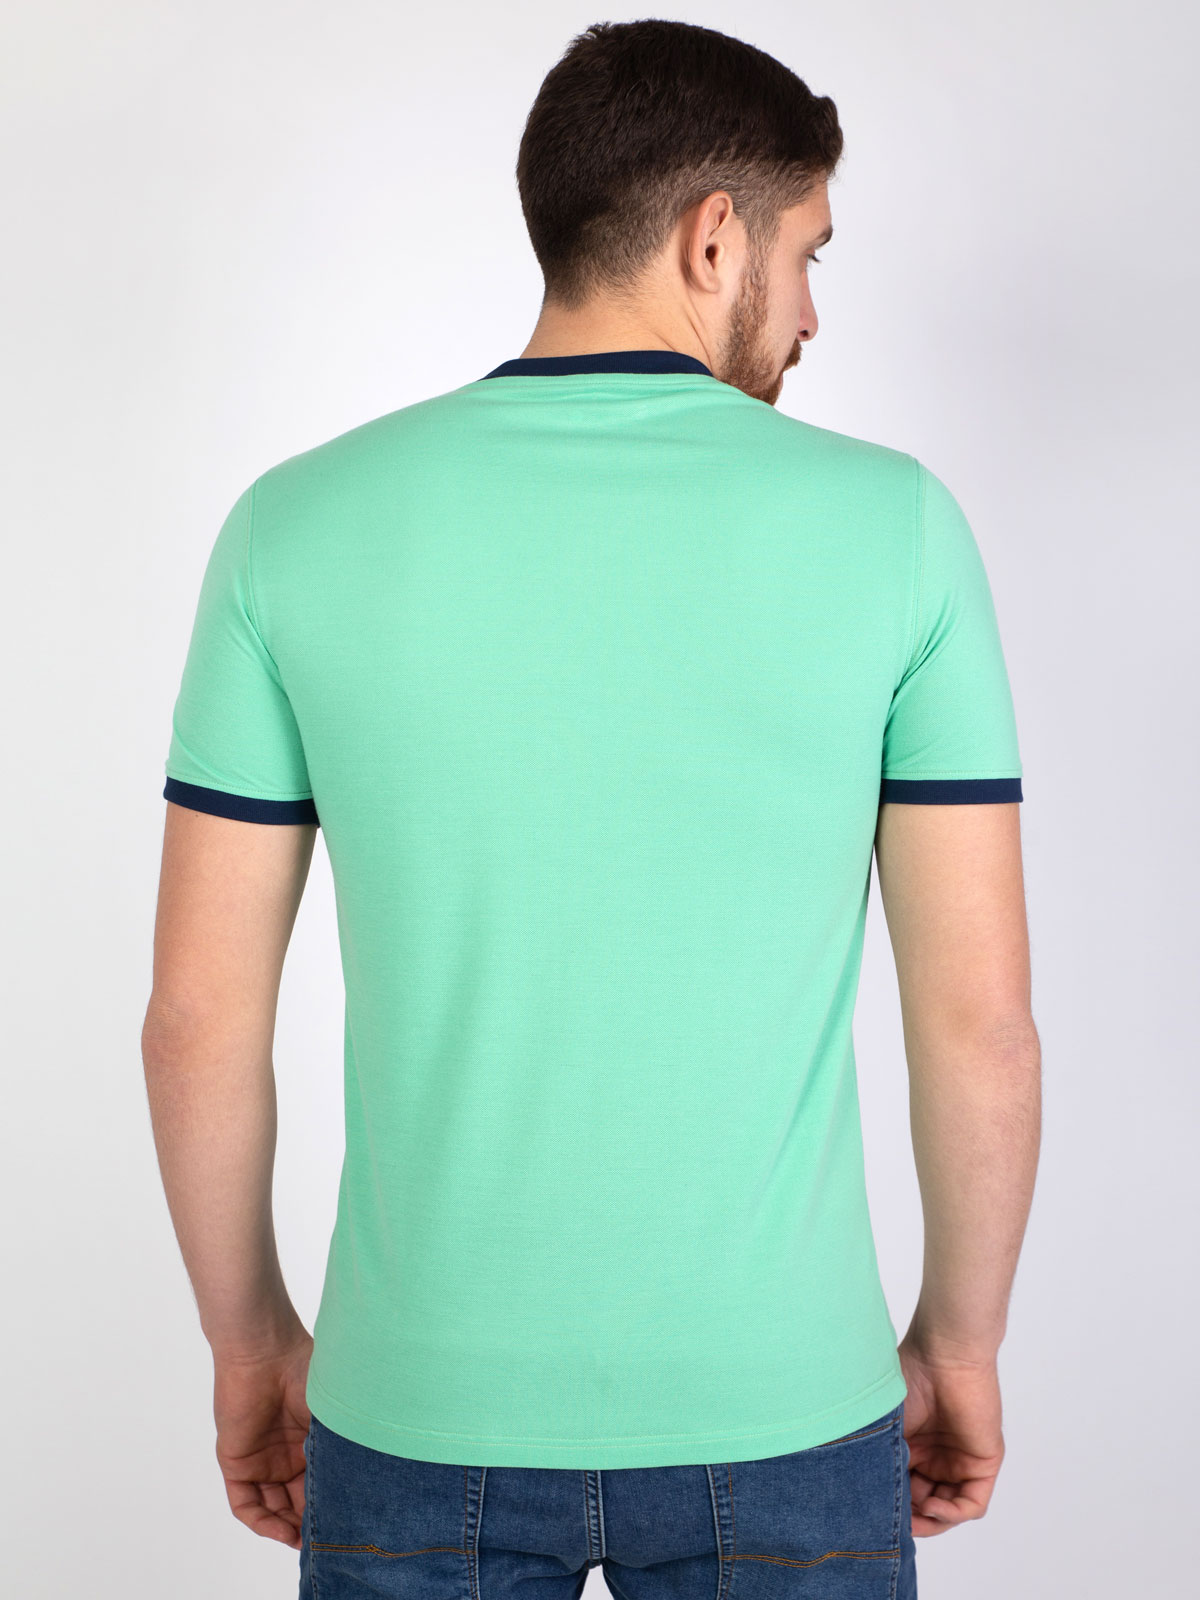 Κοντομάνικη μπλούζα με τζιν προφορά - 96396 € 21.93 img3